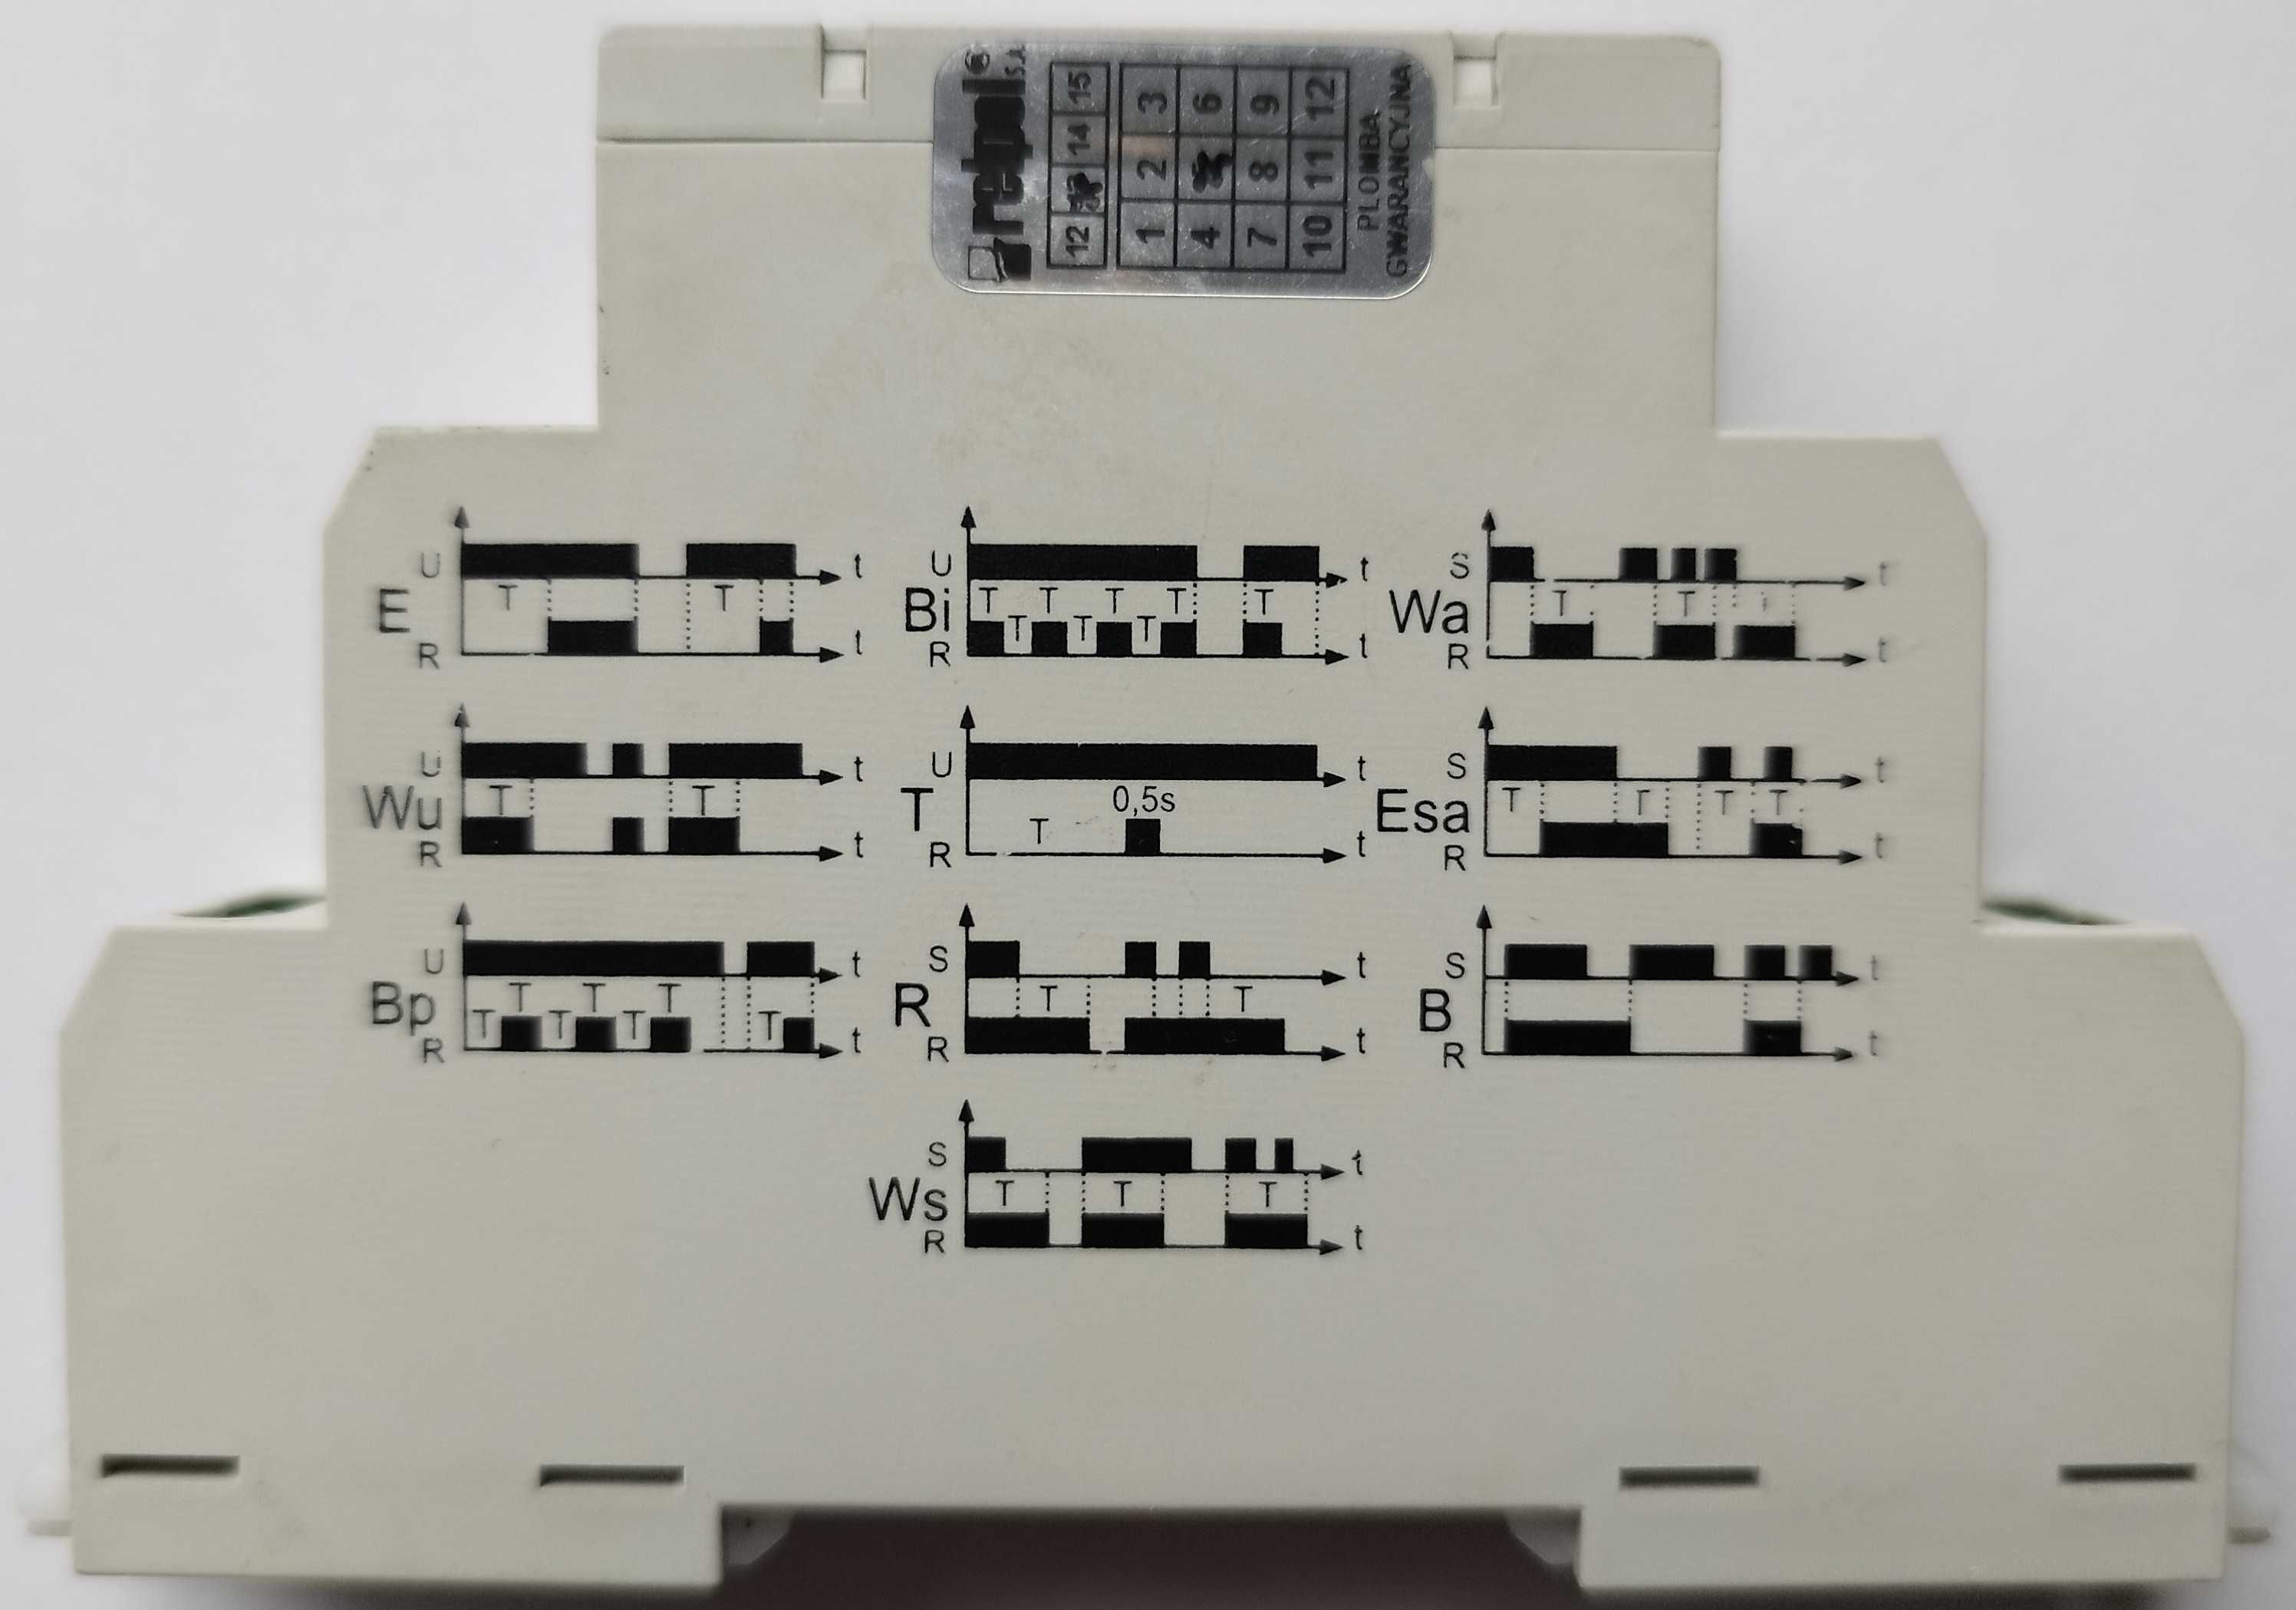 Wielofunkcyjny przekaźnik czasowy nastawny MT-TUA-17S-11-9240 RELPOL